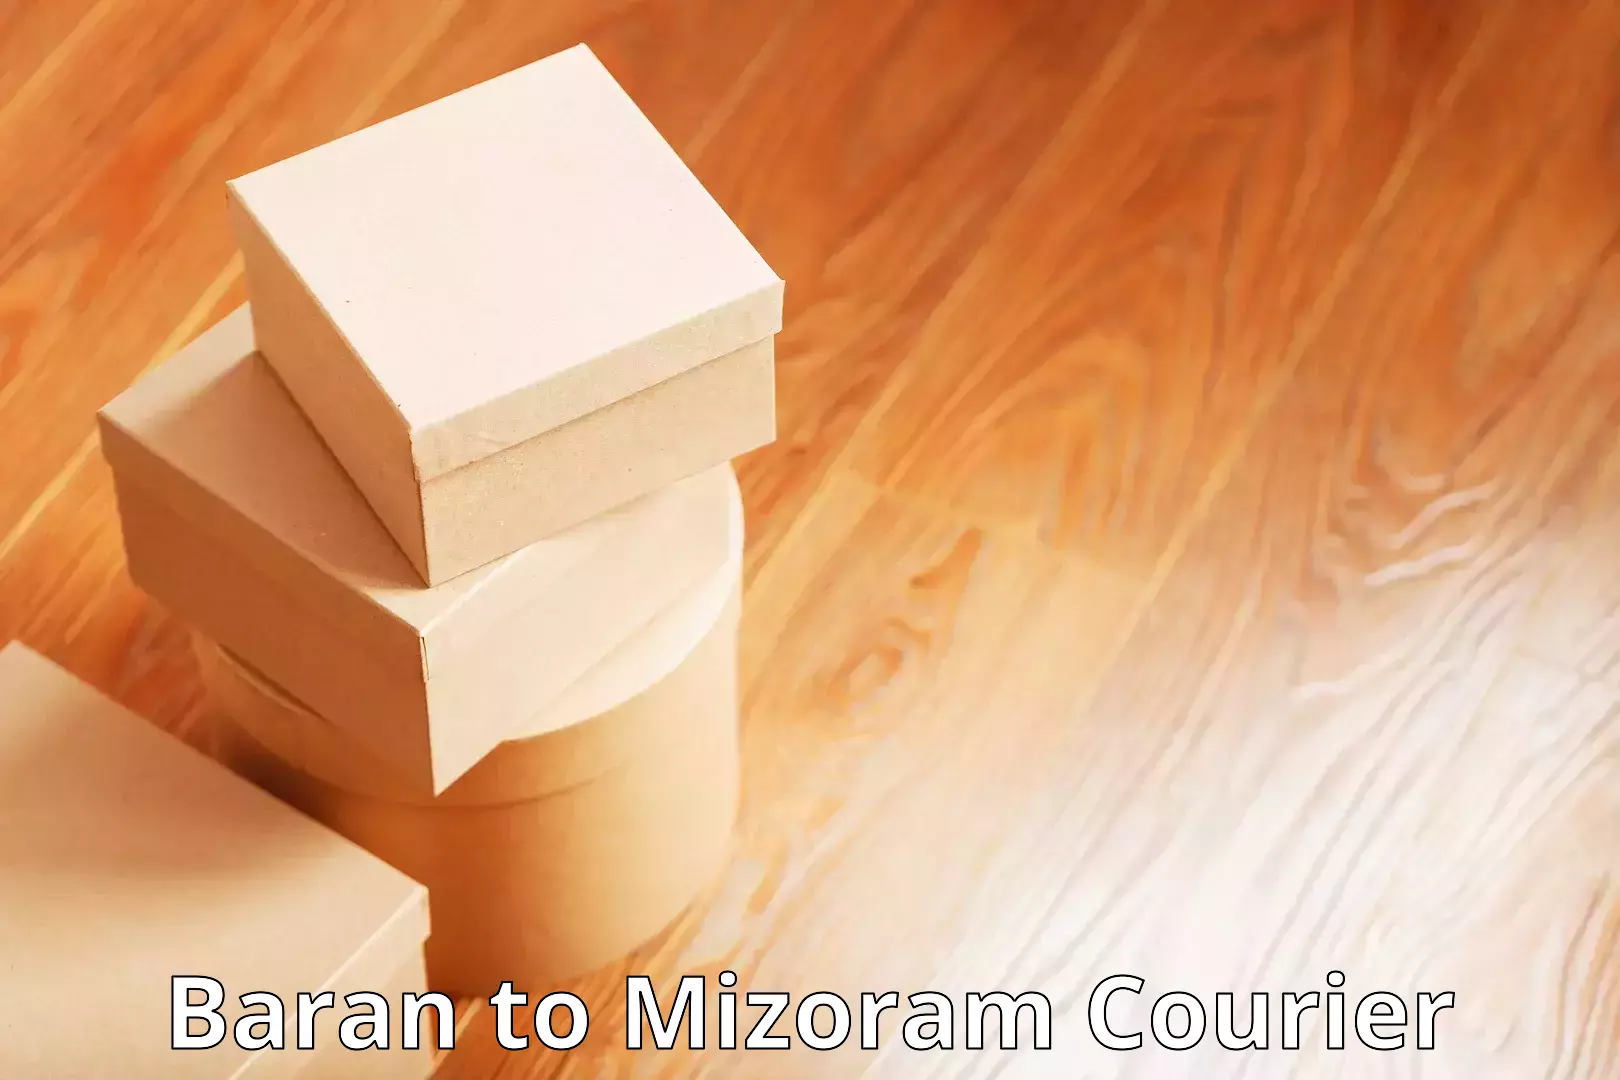 Courier app Baran to Mizoram